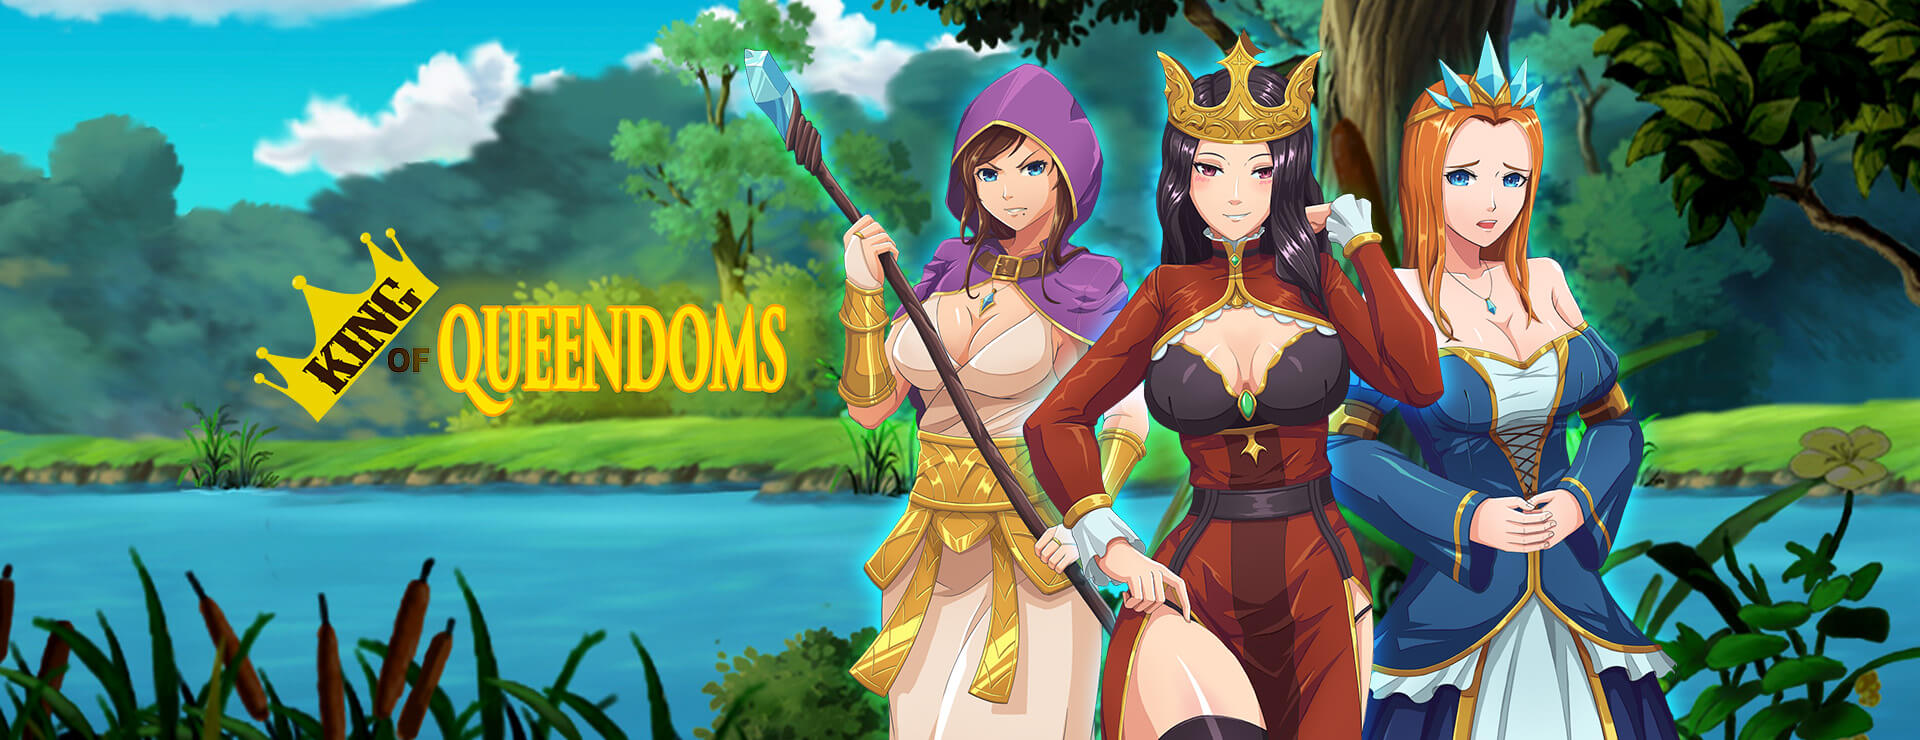 King of Queendoms - Japanisches Adventure Spiel